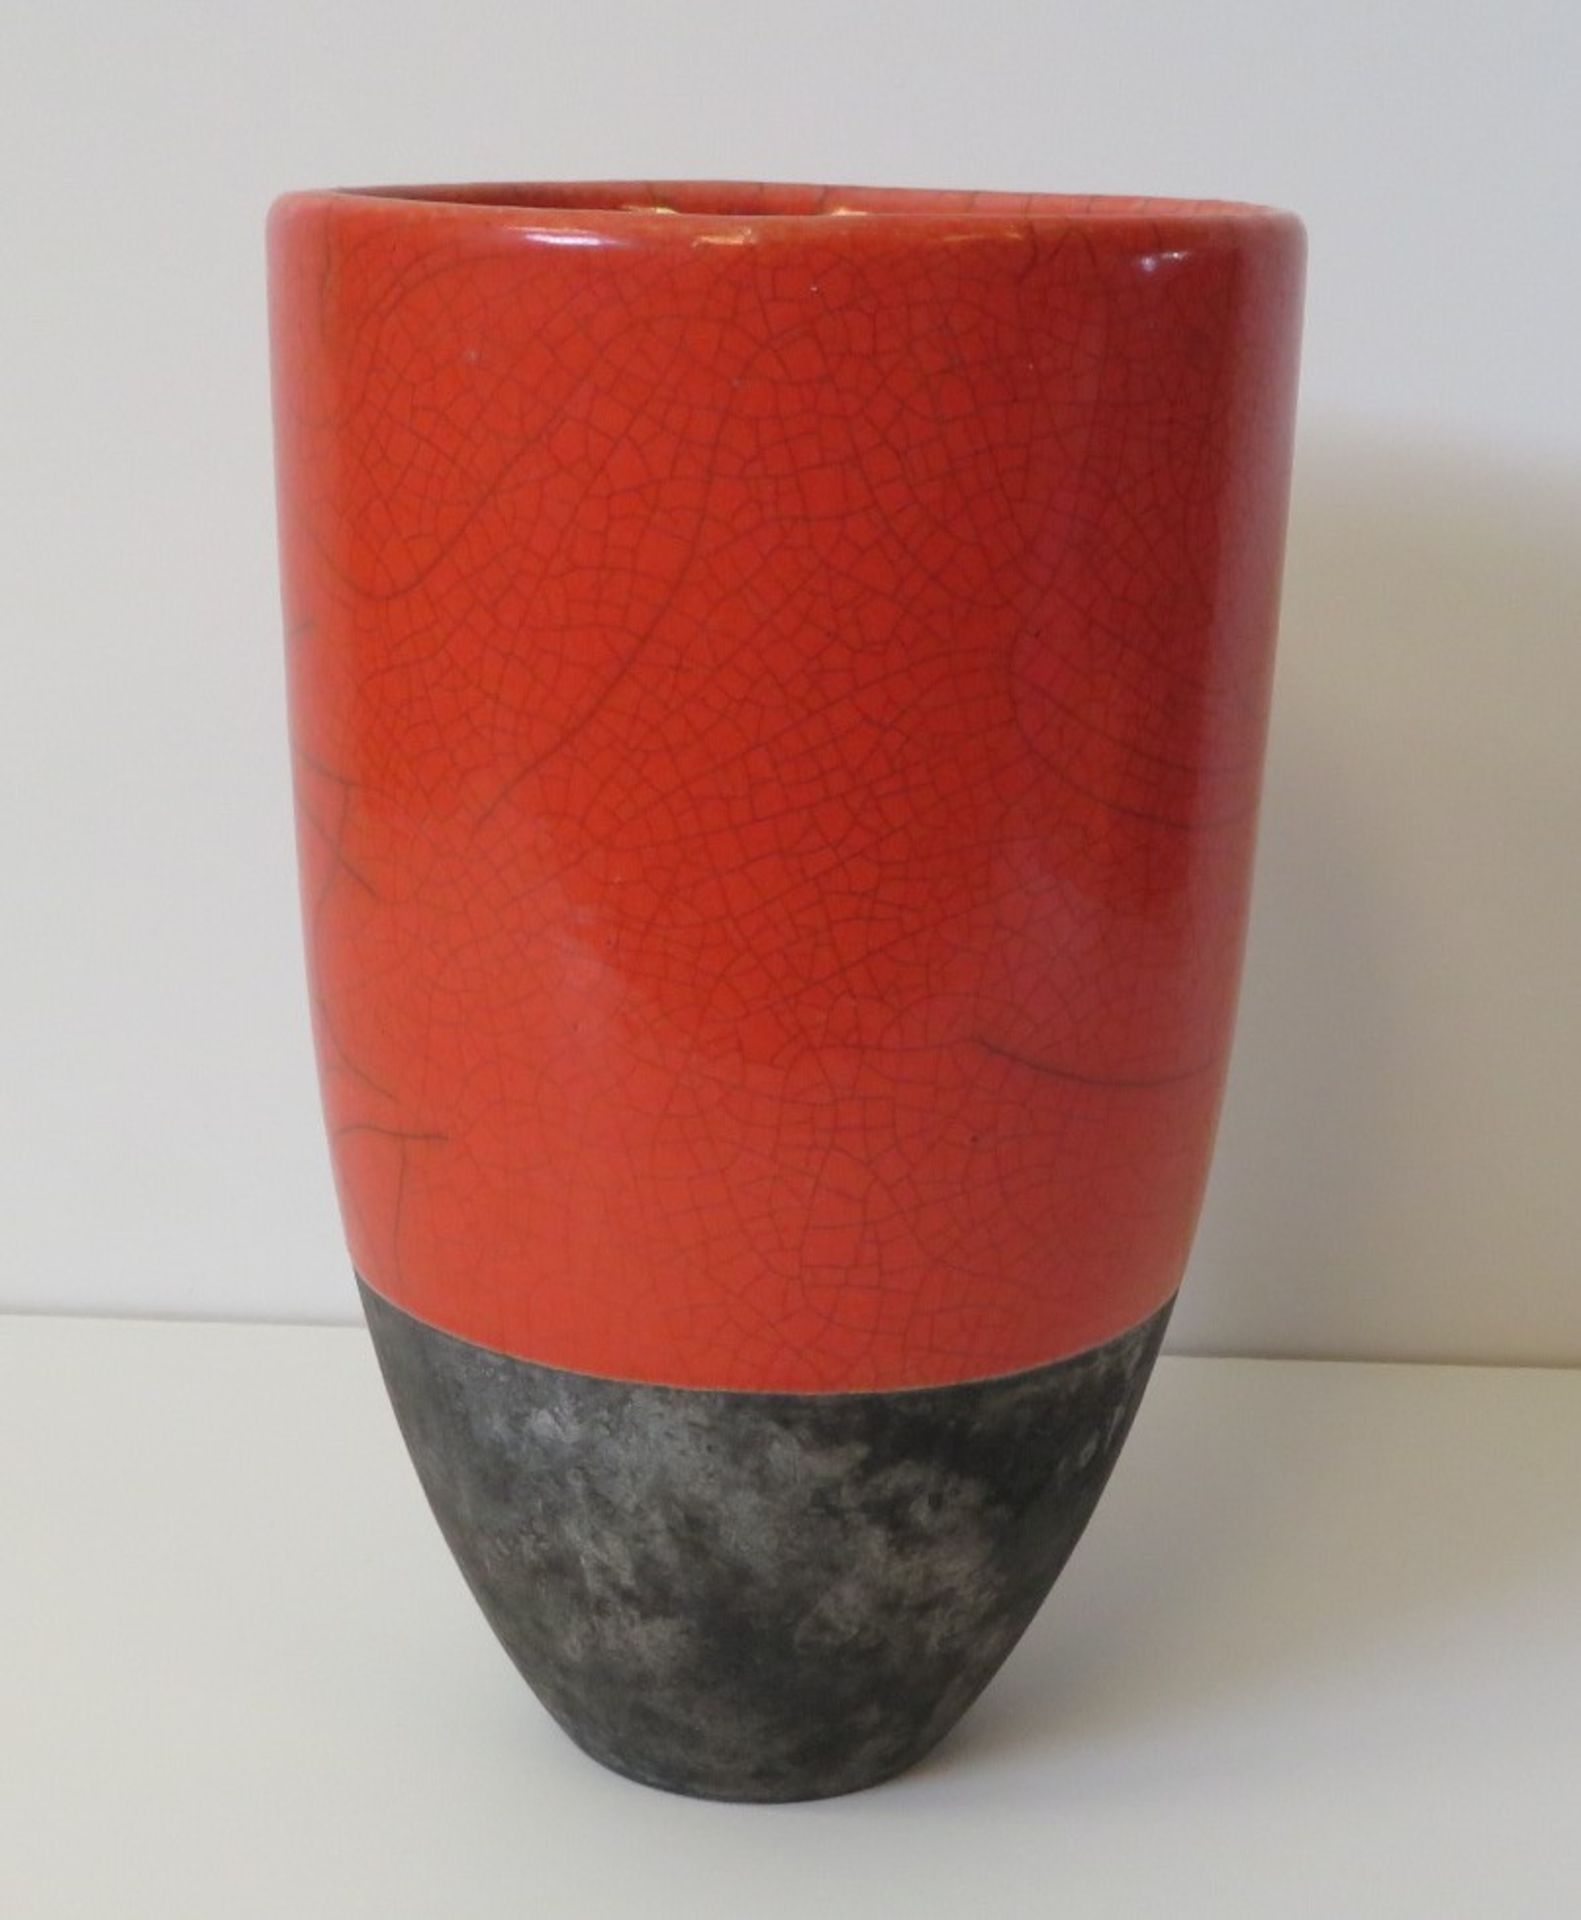 Designer Vase, 1960er Jahre, sign. "MD", Keramik, obere zwei Drittel mit orangefarbener Krakeleegla